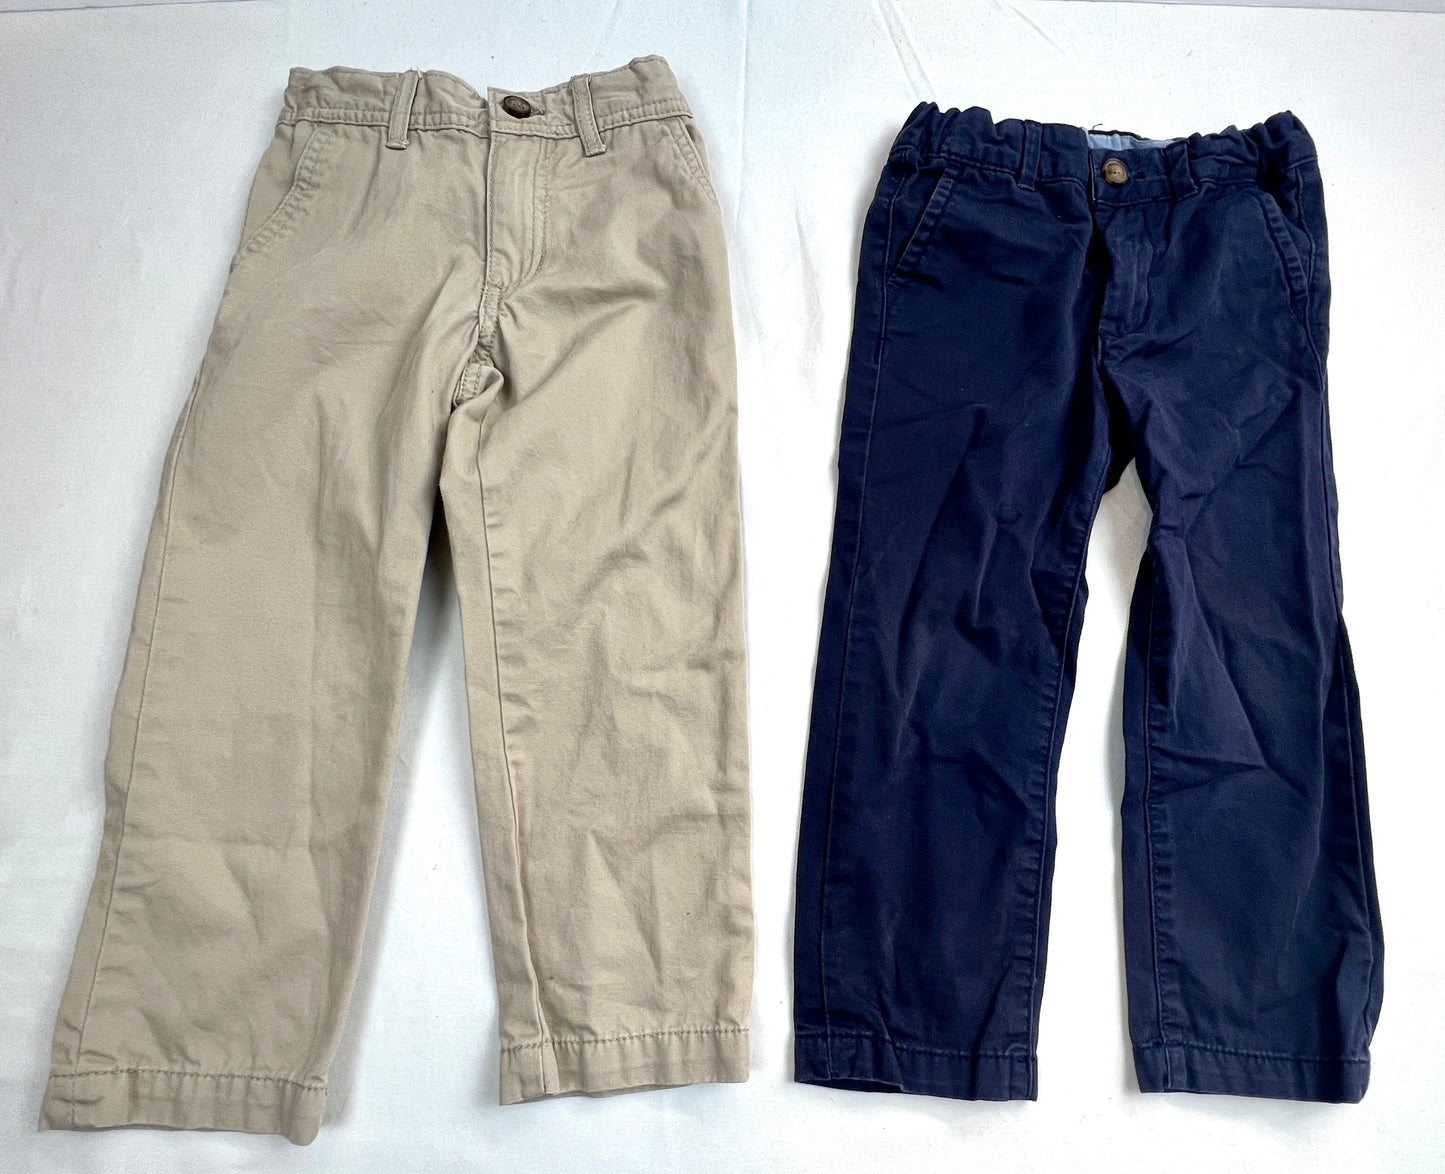 Boys 4T Navy Blue & Tan Khaki Dress Pants with adjustable waist VGUC